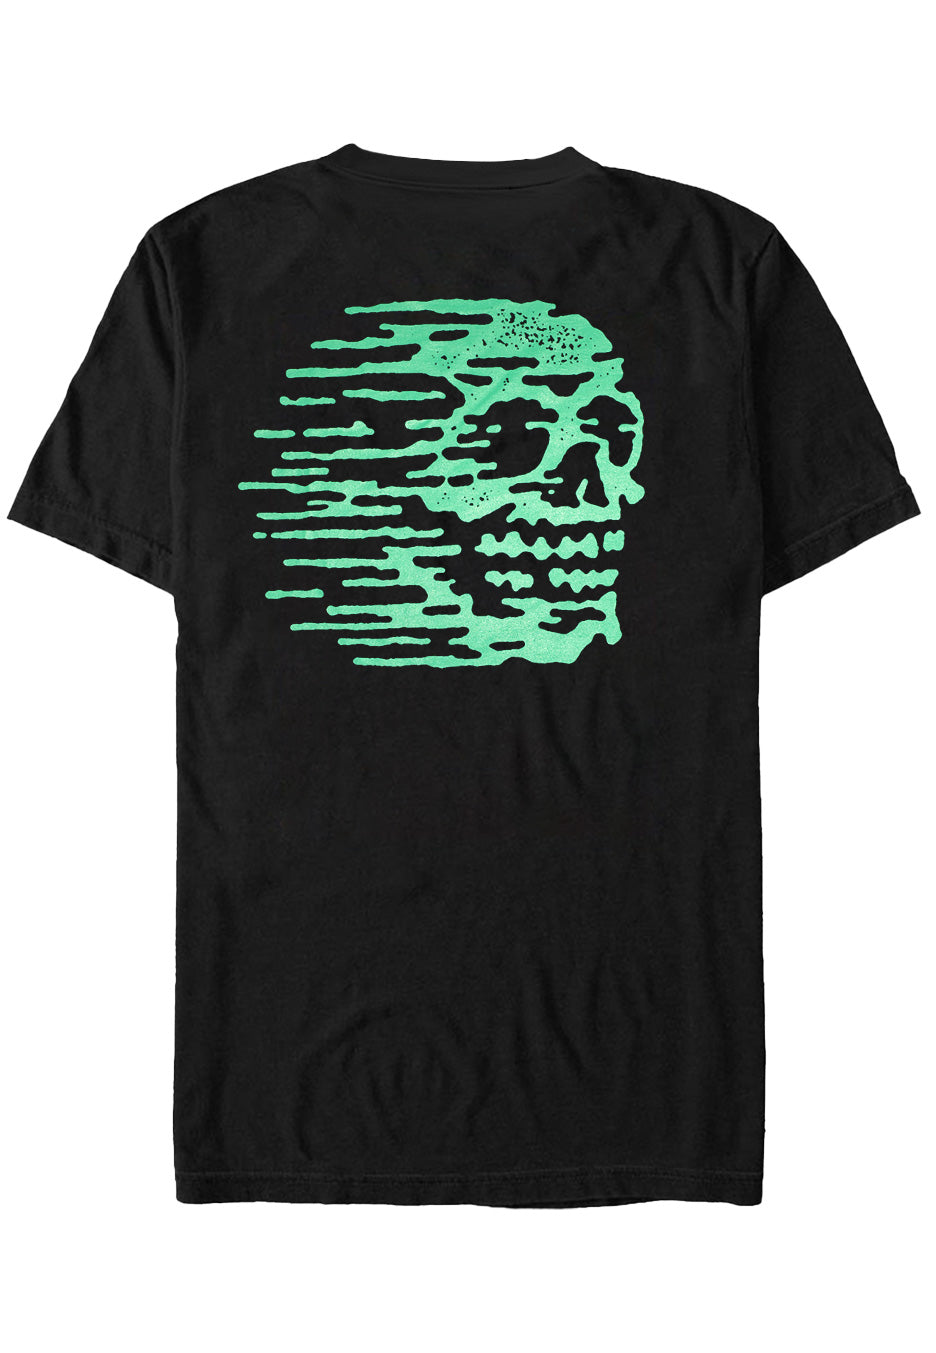 Nuclear Blast Records - Mint Green Blasthead - T-Shirt